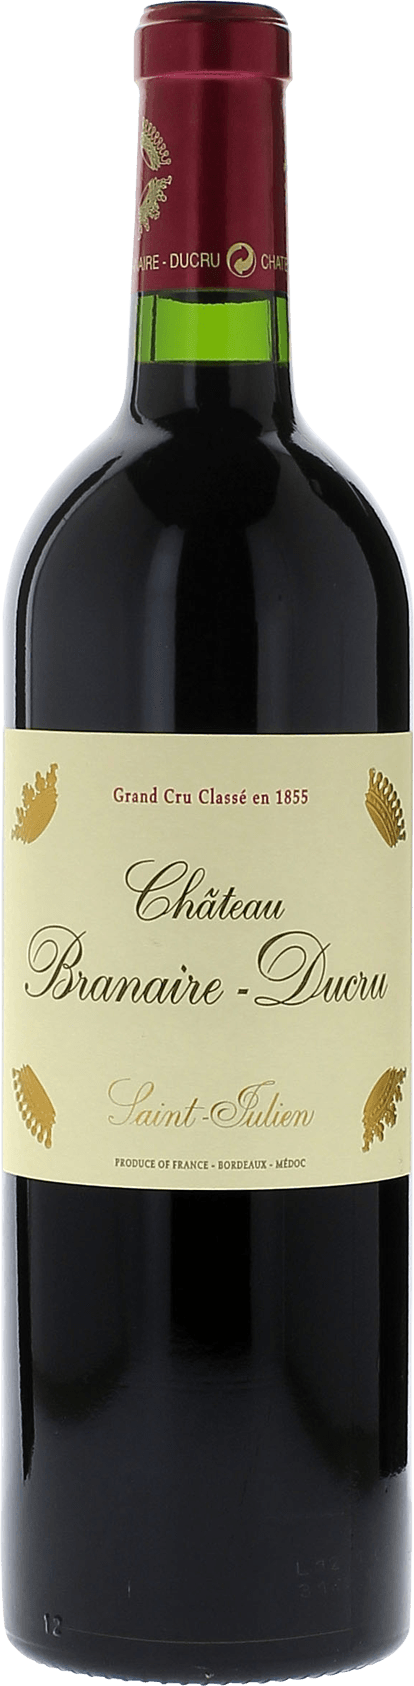 Branaire ducru 2016 4me Grand cru class Saint-Julien, Bordeaux rouge